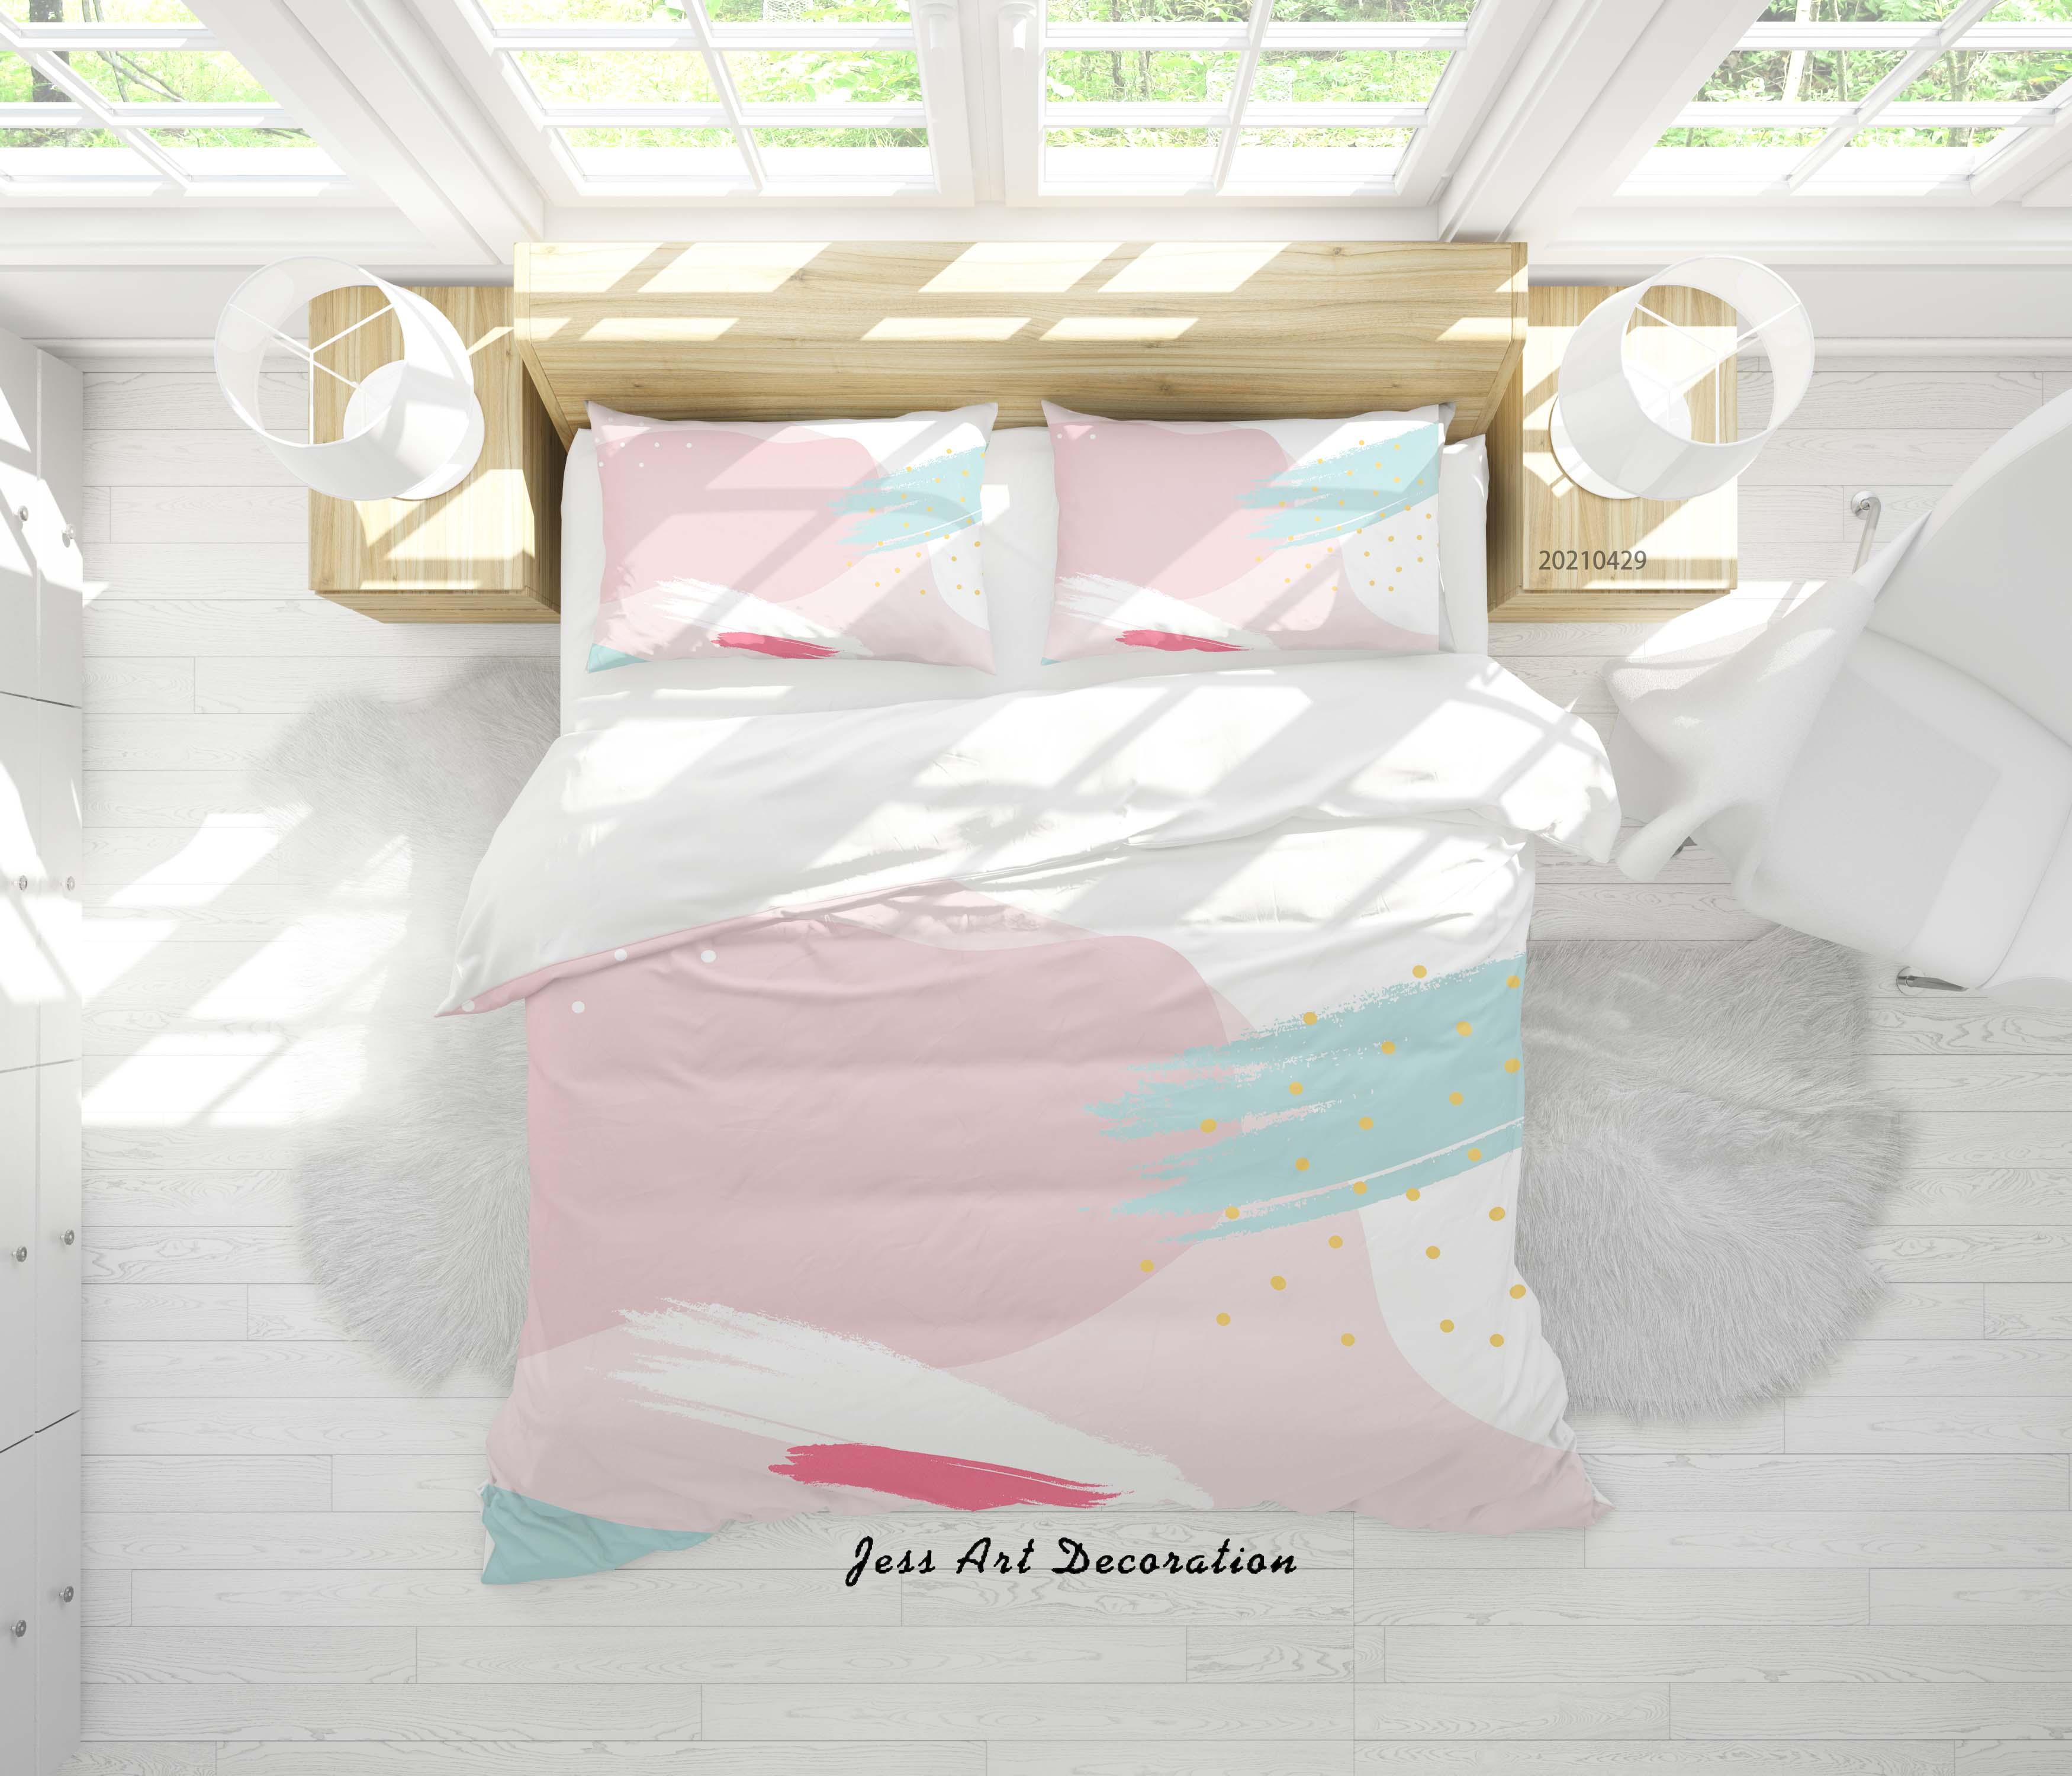 3D Watercolor Color Pattern Quilt Cover Set Bedding Set Duvet Cover Pillowcases 187- Jess Art Decoration